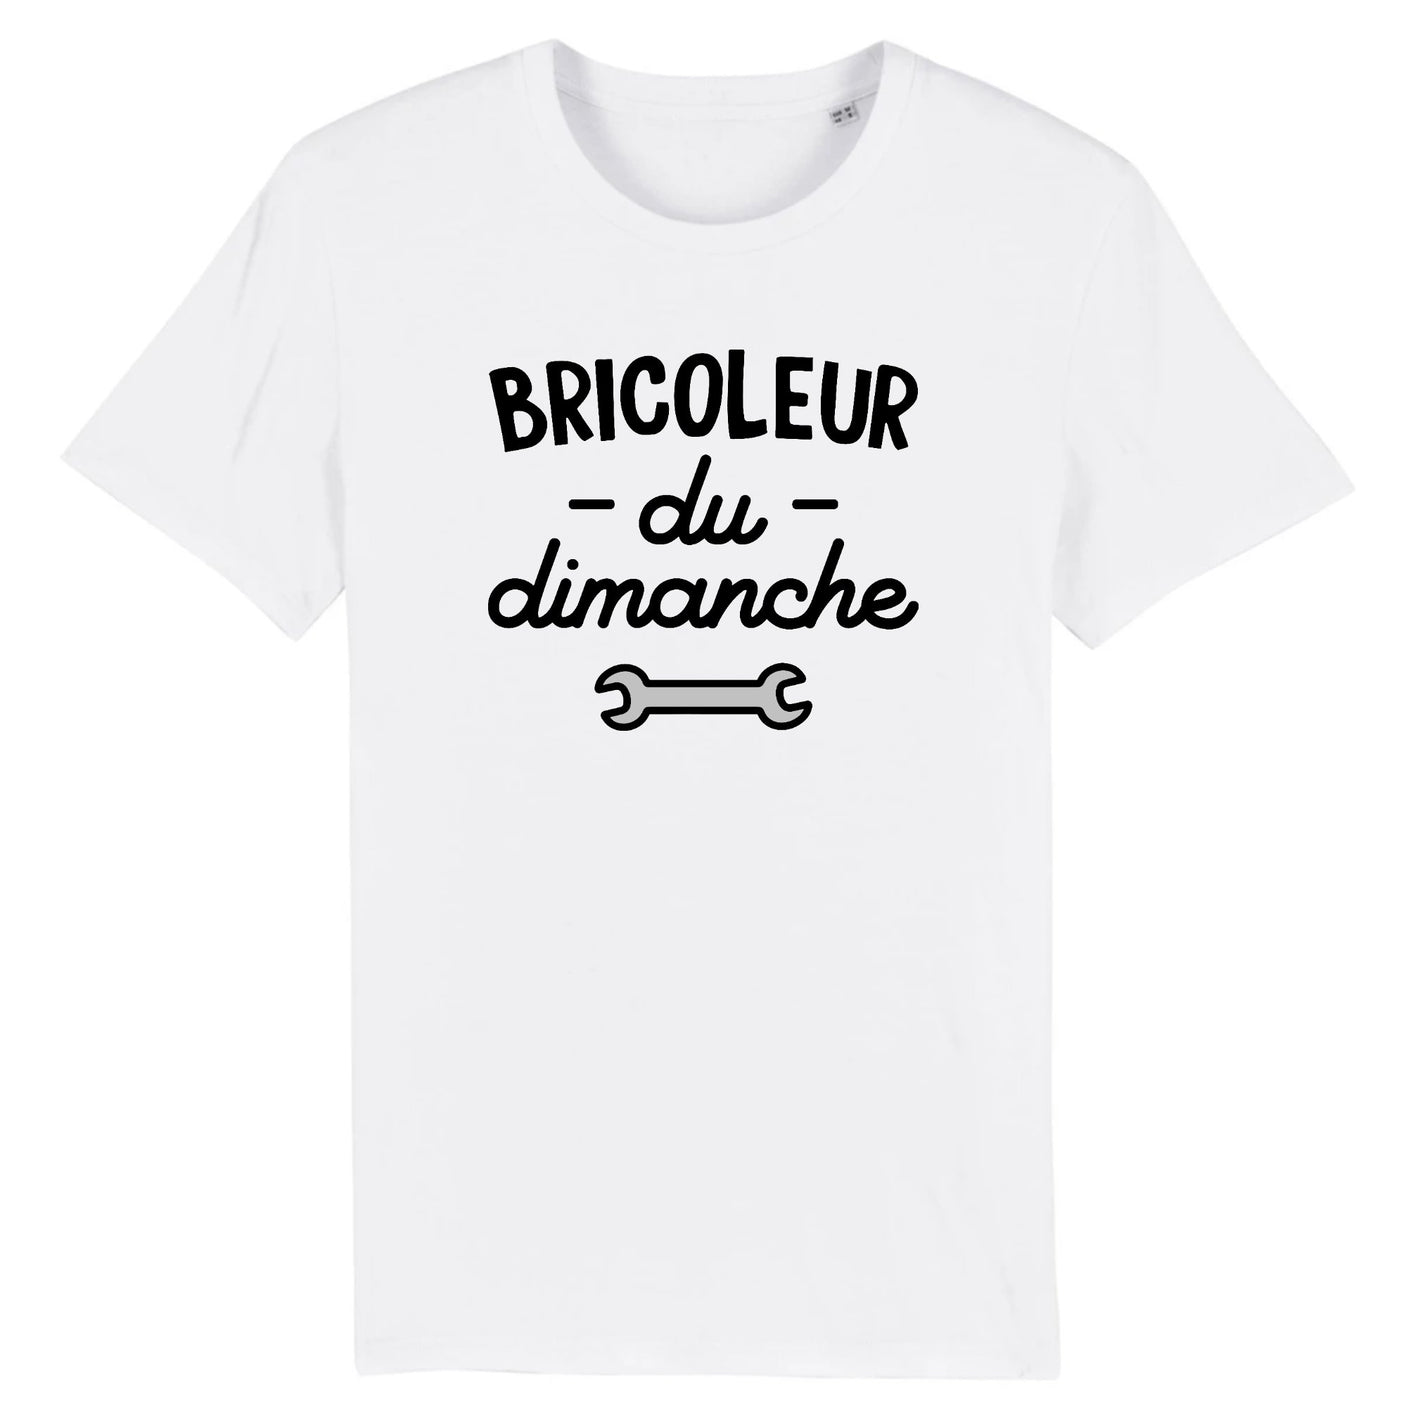 Bricoleur, citation humour homme bricolage' T-shirt Homme